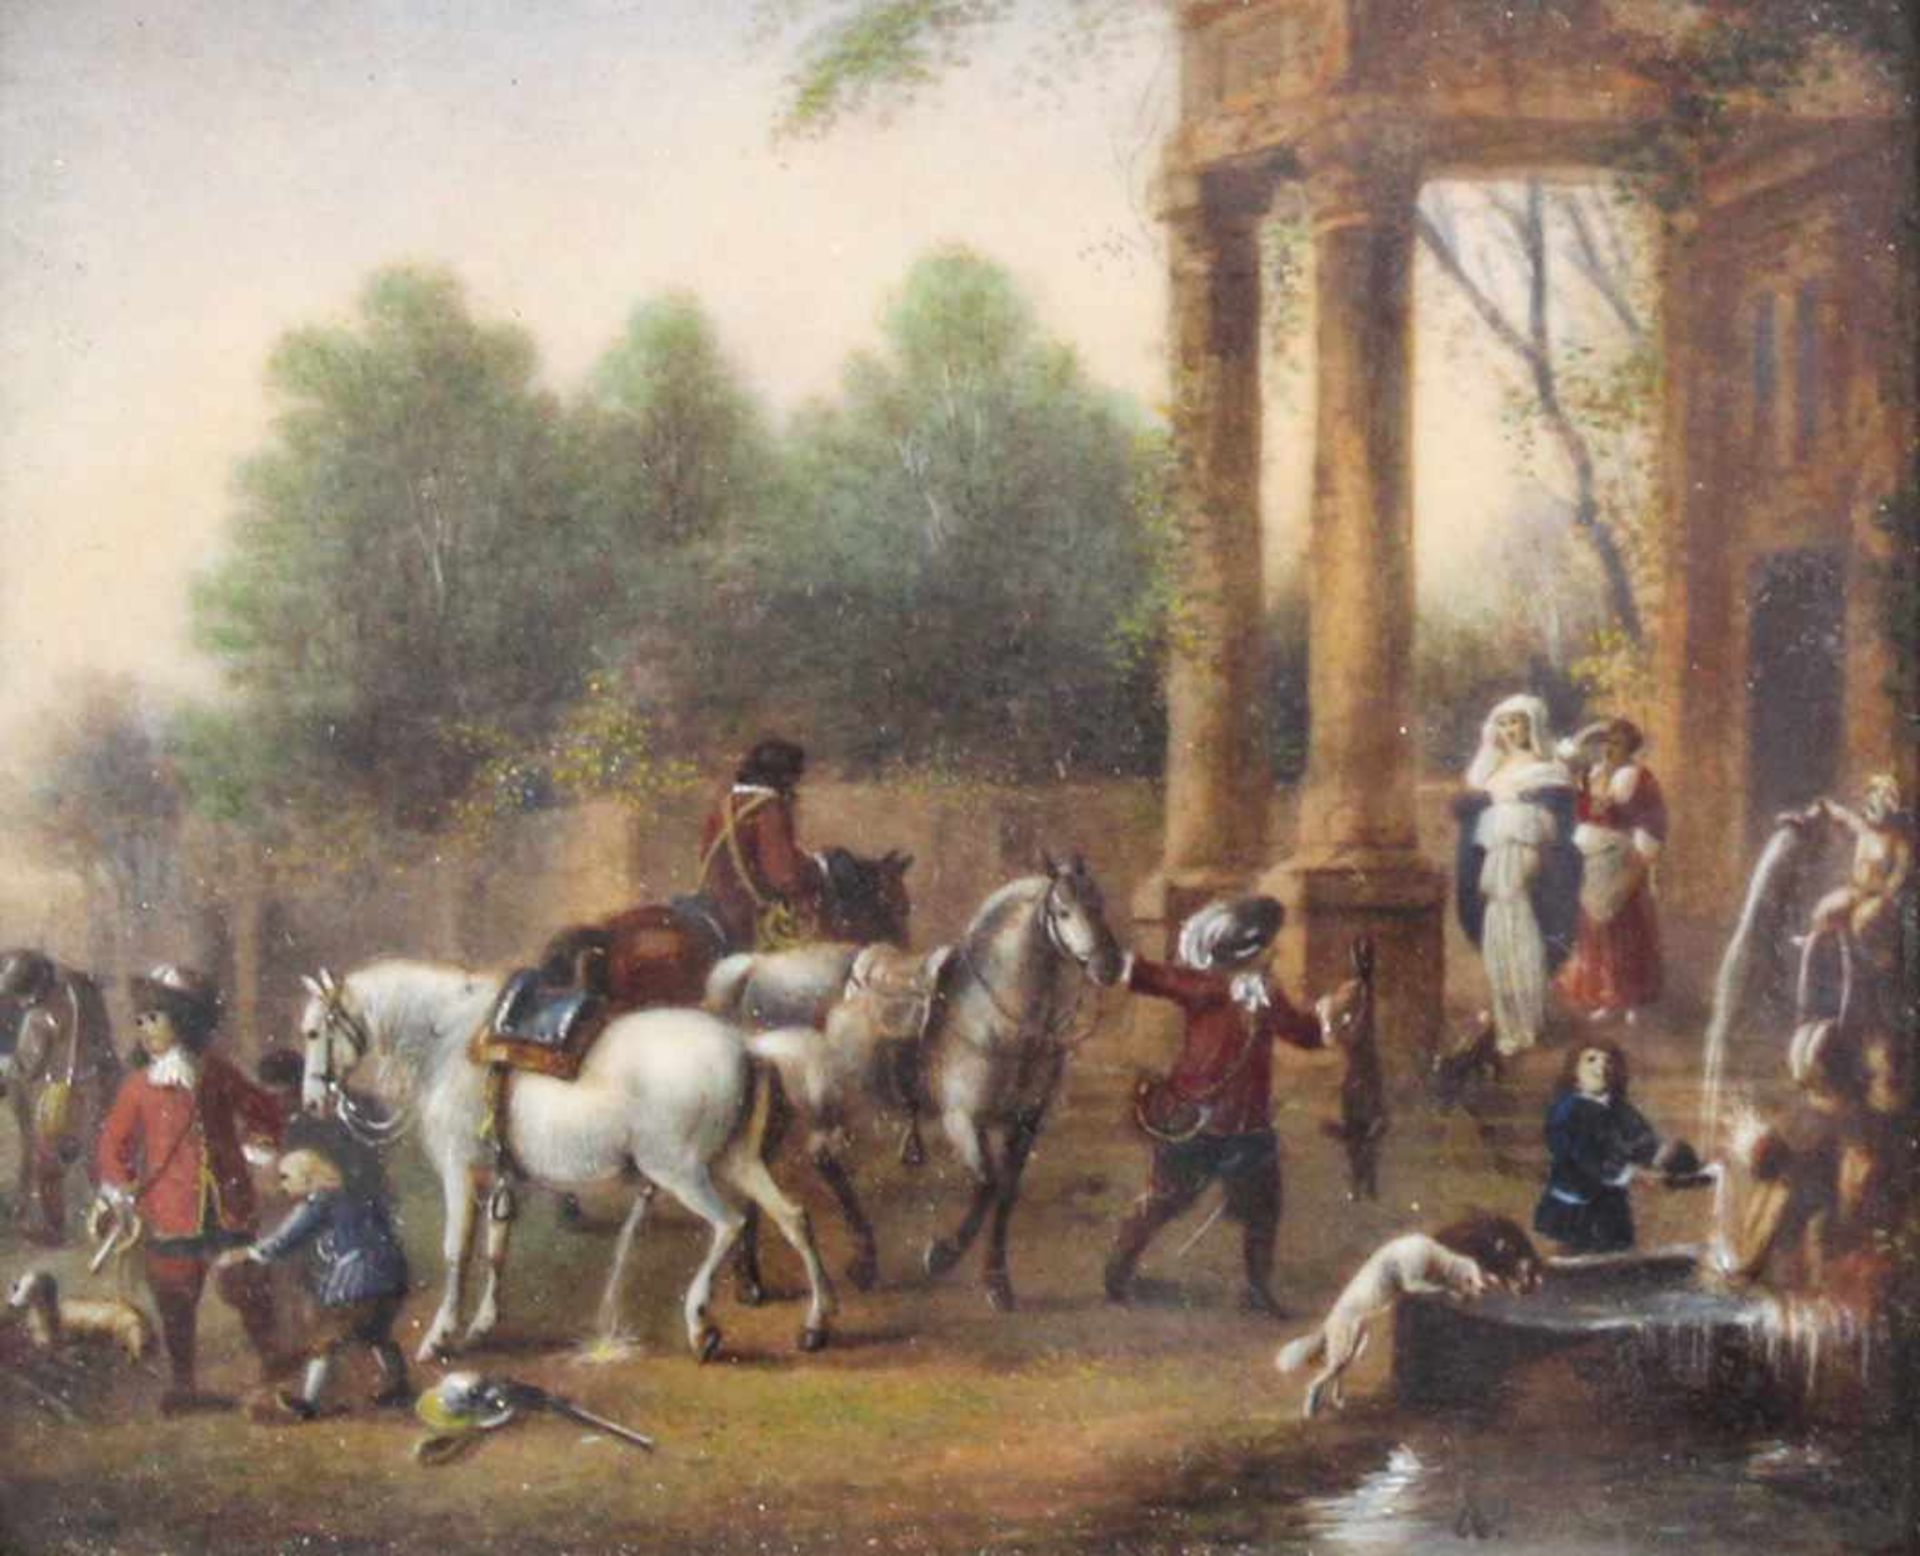 Edith PALMER (1770 - 1834) zugeschrieben. Reiter vor einem antiken Palast.8 cm x 10 cm. Nicht